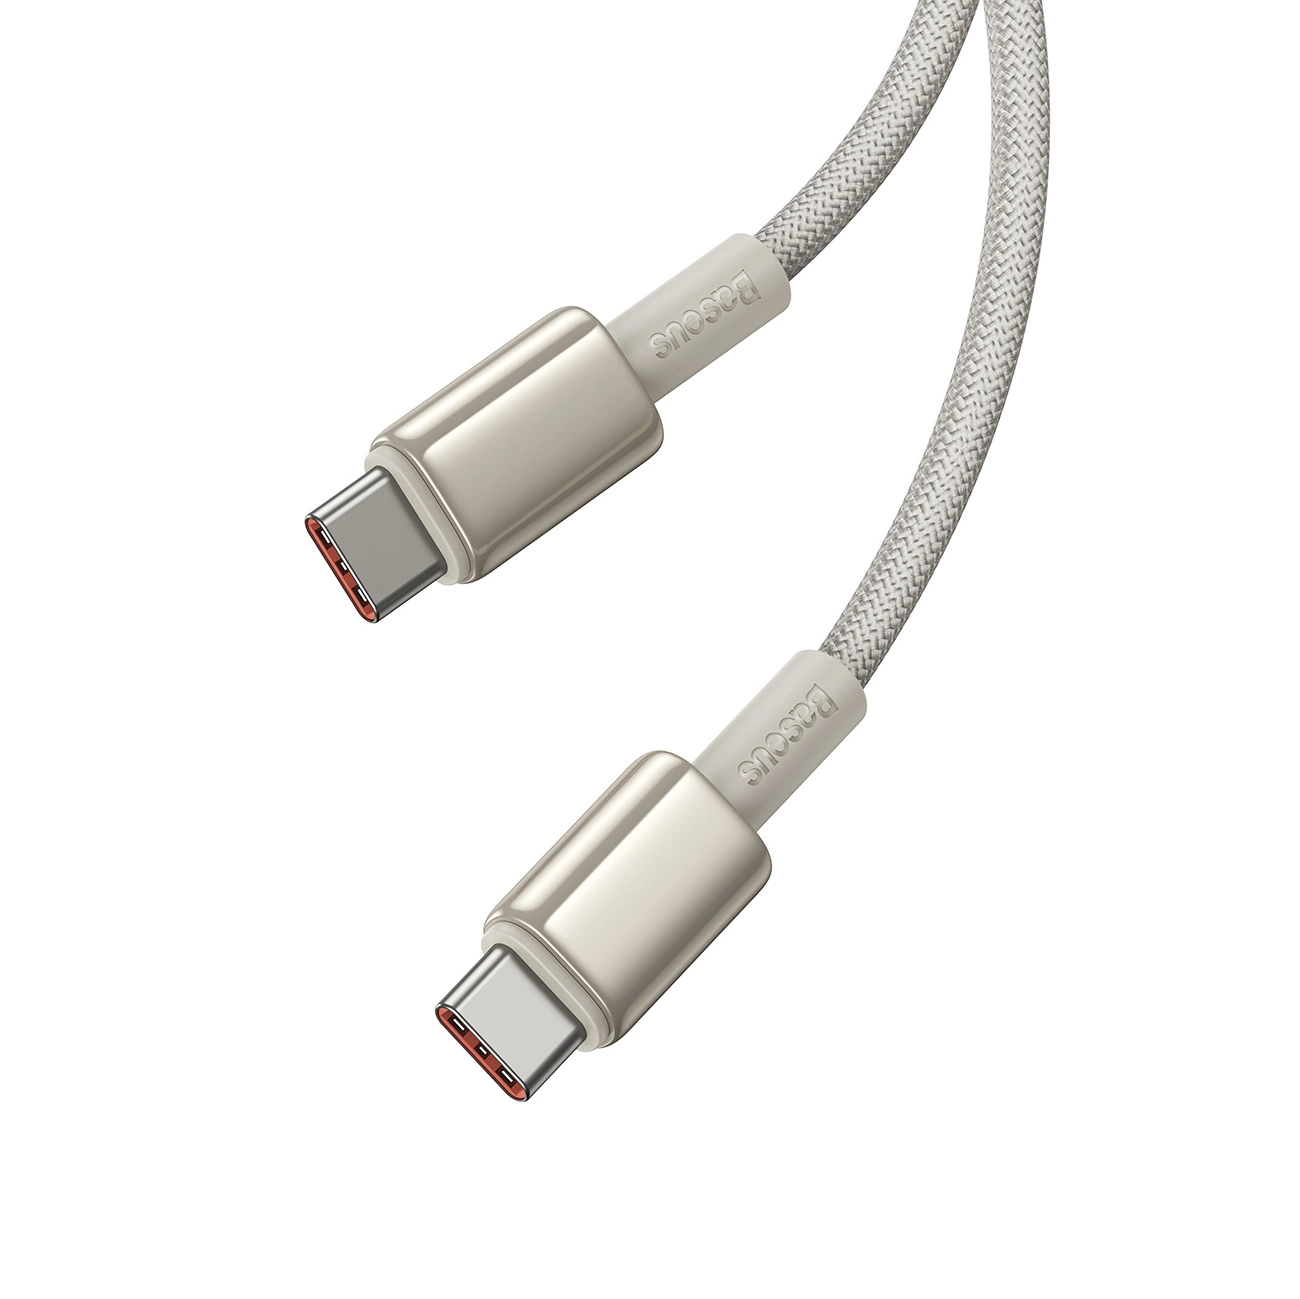 Baseus Tungsten Gold-Kabel mit USB-C/USB-C-Anschlüssen mit einer Leistung von bis zu 100 W und einer Länge von 2 m auf weißem Hintergrund